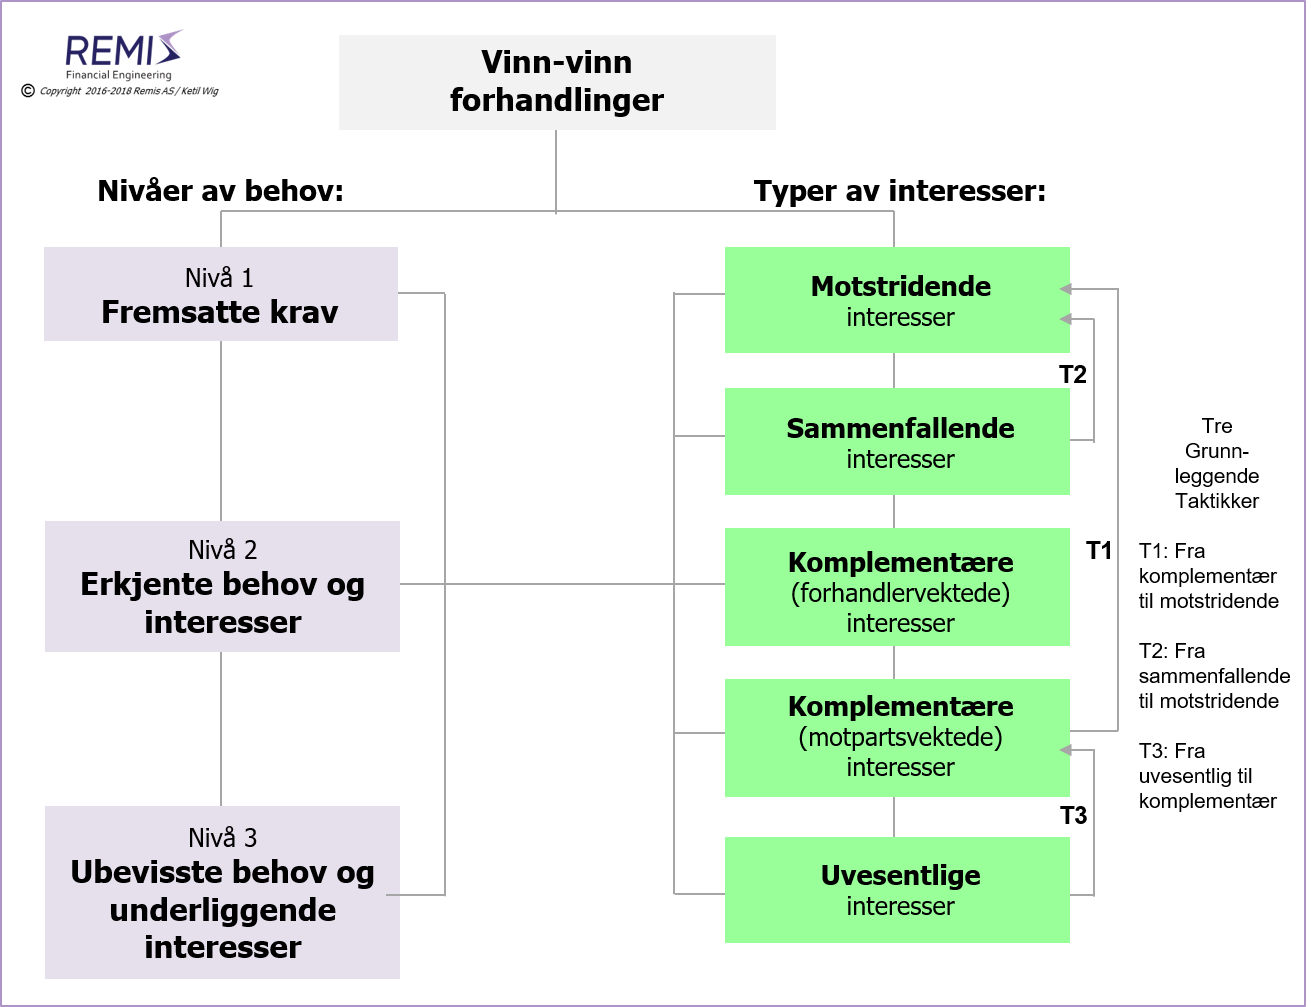 En modell for vinn-vinn løsninger i forhandlinger, 
    
    forhandling, forhandlinger, forhandlingsstrategi, forhandlingsstrategier, strategi i forhandlinger, 
    forhandlingsteknikk, forhandlinger og forhandlingsteknikk, 
    forhandlingskraft, forhandlingsstyrke, forhandlingsløsning, forhandlingsløsninger, 
    
    vinn-vinn forhandling, vinn-vinn forhandlinger, vinn-vinn forhandlingsstrategi, vinn-vinn forhandlingsstrategier, vinn-vinn strategi i forhandlinger, 
    vinn-vinn forhandlingsteknikk, vinn-vinn forhandlinger og forhandlingsteknikk, 
    vinn-vinn, vinn-vinn løsning, vinn-vinn løsninger, vinn-vinn forhandlingsløsning, vinn-vinn forhandlingsløsninger, 
    vinn-vinn løsning i forhandlinger, vinn-vinn løsninger i forhandlinger, vinn-vinn løsning i forhandlingssituasjoner, vinn-vinn løsninger i forhandlingssituasjoner, 
    
    behov i forhandlinger, erkjente behov i forhandlinger, interesser i forhandlinger, erkjente interesser i forhandlinger, 
    bakenforliggende behov i forhandlinger, bakenforliggende og erkjente behov i forhandlinger, bakenforliggende interesser i forhandlinger, bakenforliggende og erkjente interesser i forhandlinger, 
    behov og forhandlinger, erkjente behov og forhandlinger, interesser og forhandlinger, erkjente interesser og forhandlinger, 
    bakenforliggende behov og forhandlinger, bakenforliggende og erkjente behov og forhandlinger, bakenforliggende interesser og forhandlinger, bakenforliggende og erkjente interesser og forhandlinger, 
    
    motstridende interesser i forhandlinger, motstridende interesser og forhandlinger, motstridende interesser i forhandlingssituasjoner, motstridende interesser og forhandlingssituasjoner, 
    sammenfallende interesser i forhandlinger, sammenfallende interesser og forhandlinger, sammenfallende interesser i forhandlingssituasjoner, sammenfallende interesser og forhandlingssituasjoner, 
    komplementerende interesser i forhandlinger, komplementerende interesser og forhandlinger, komplementerende interesser i forhandlingssituasjoner, komplementerende interesser og forhandlingssituasjoner, 
    komplementære interesser i forhandlinger, komplementære interesser og forhandlinger, komplementære interesser i forhandlingssituasjoner, komplementære interesser og forhandlingssituasjoner, 
    uvesentlige interesser i forhandlinger, uvesentlige interesser og forhandlinger, uvesentlige interesser i forhandlingssituasjoner, uvesentlige interesser og forhandlingssituasjoner, 
    
    risiko i forhandlinger, risiko og forhandlinger, risiko i forhandlingssituasjoner, risiko og forhandlingssituasjoner, 
    håndtering av risiko i forhandlinger, håndtering av risiko og forhandlinger, håndtering av risiko i forhandlingssituasjoner, håndtering av risiko og forhandlingssituasjoner, 
    
    forhandlingssituasjon, forhandlingssituasjoner, 
    krevende forhandlinger, krevende forhandlingssituasjoner, 
    forhandlingskraft i forhandlinger, forhandlingskraft i forhandlingssituasjoner, 
    forhandlingsstyrke i forhandlinger, forhandlingsstyrke i forhandlingssituasjoner